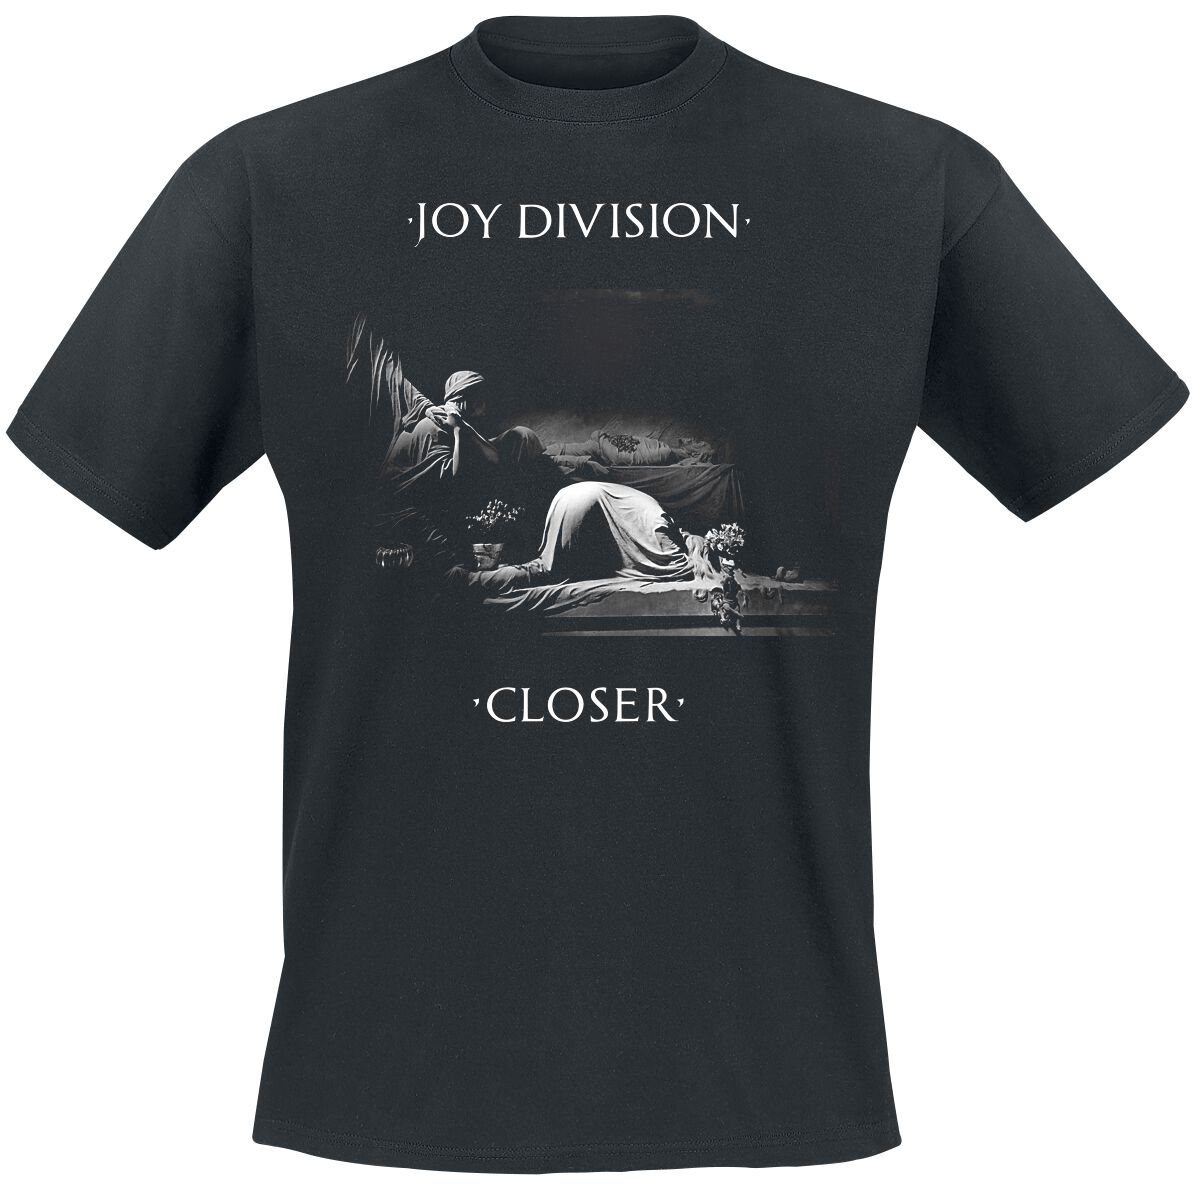 Joy Division T-Shirt - Classic Closer - S bis XXL - für Männer - Größe XL - schwarz  - Lizenziertes Merchandise!